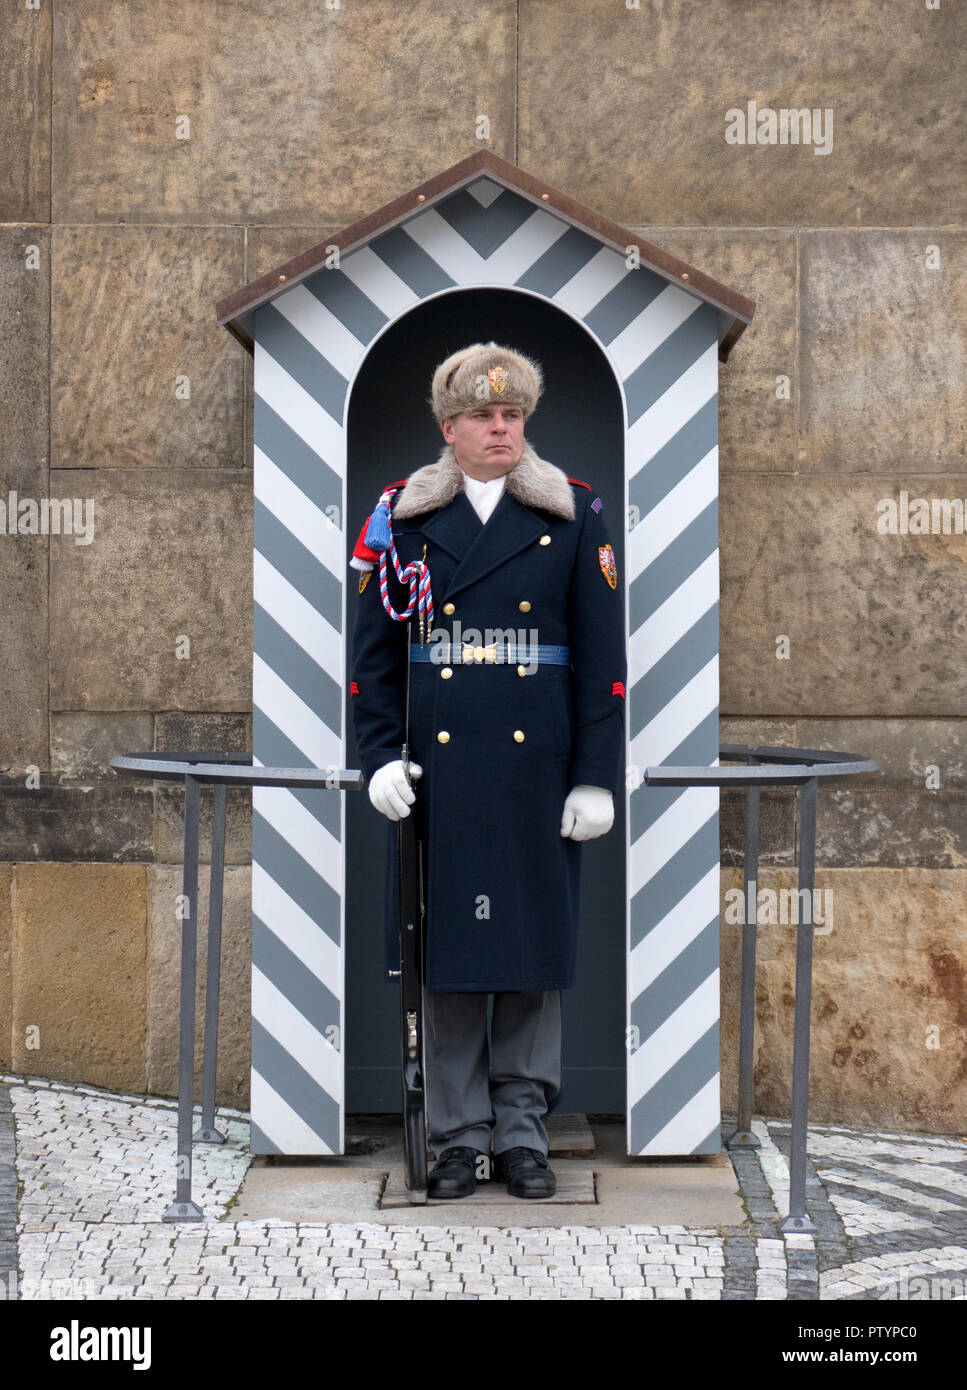 Sentry guard des forces armées de la République tchèque au Château de Prague - Pražský hrad Prague, République tchèque. Banque D'Images